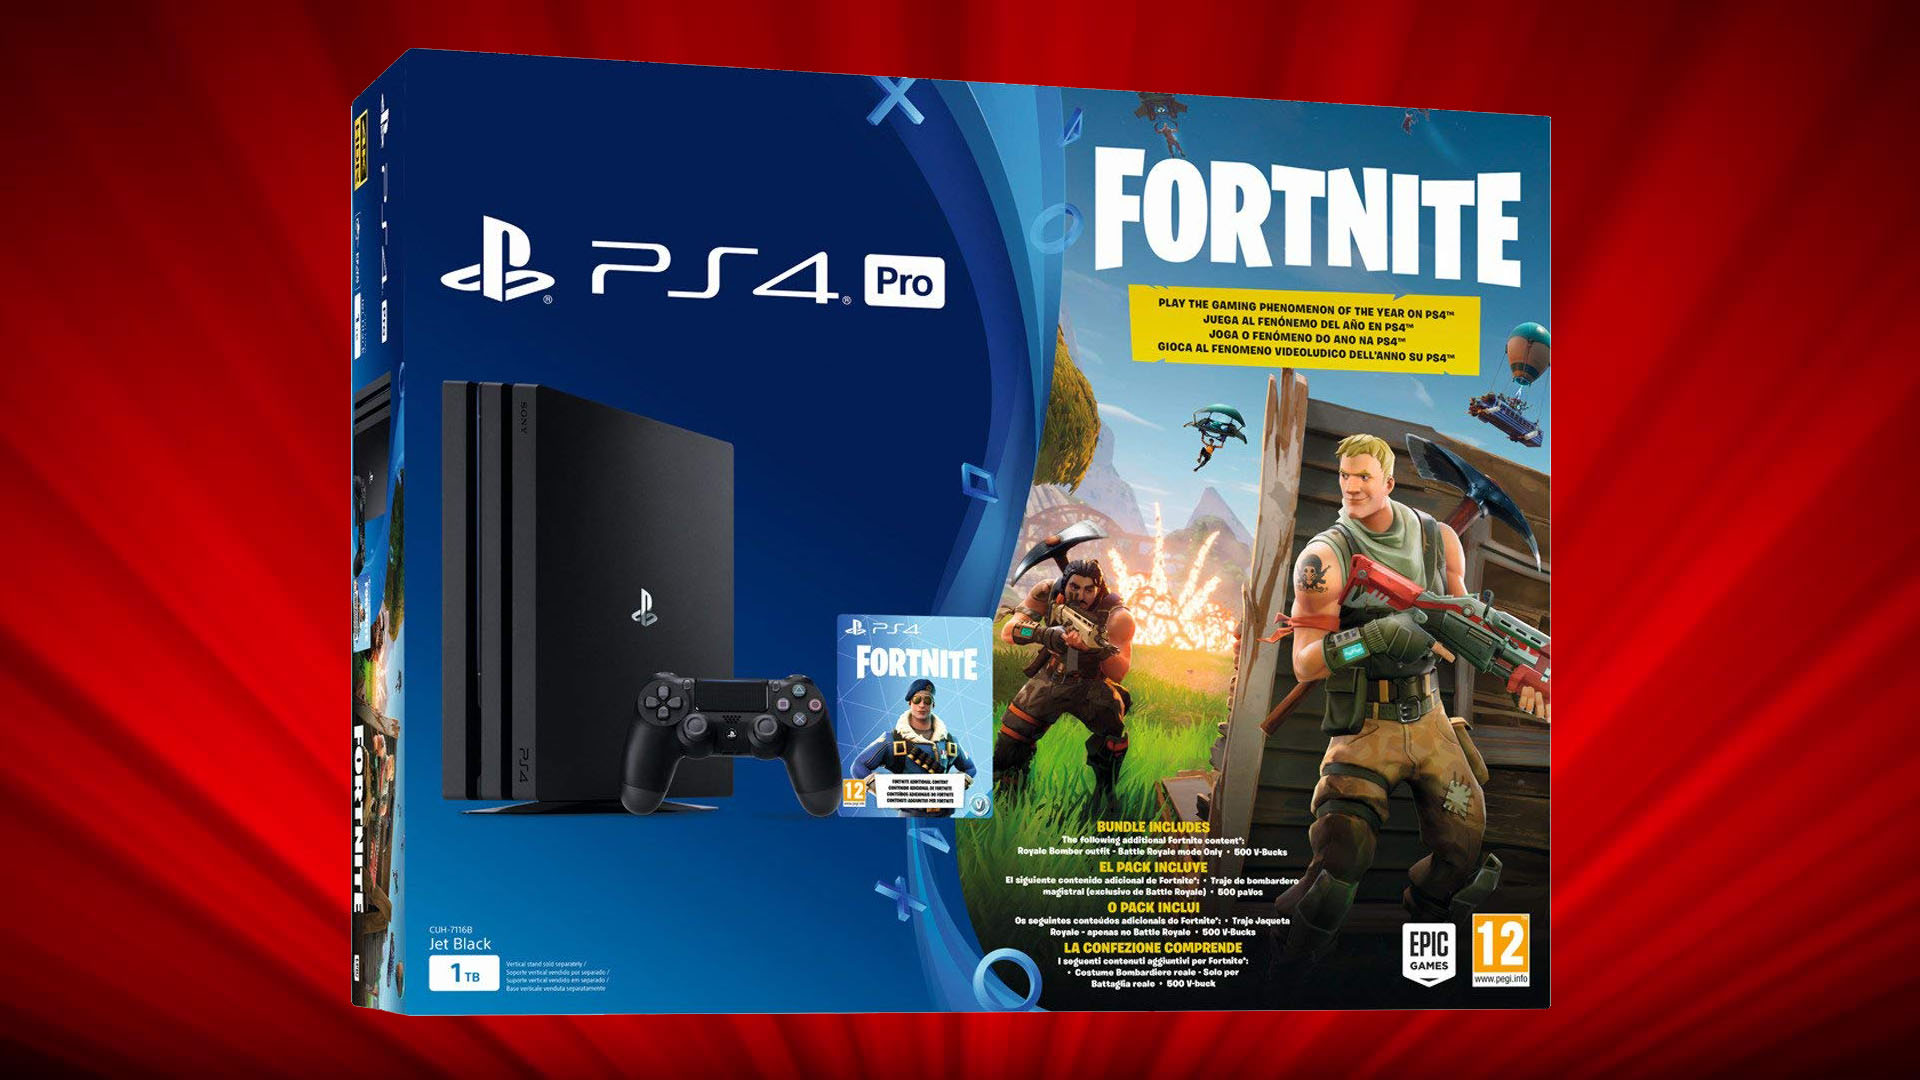 Ofertón! PS4 de 1 TB edición Fortnite 339 euros | Tecnología - ComputerHoy.com